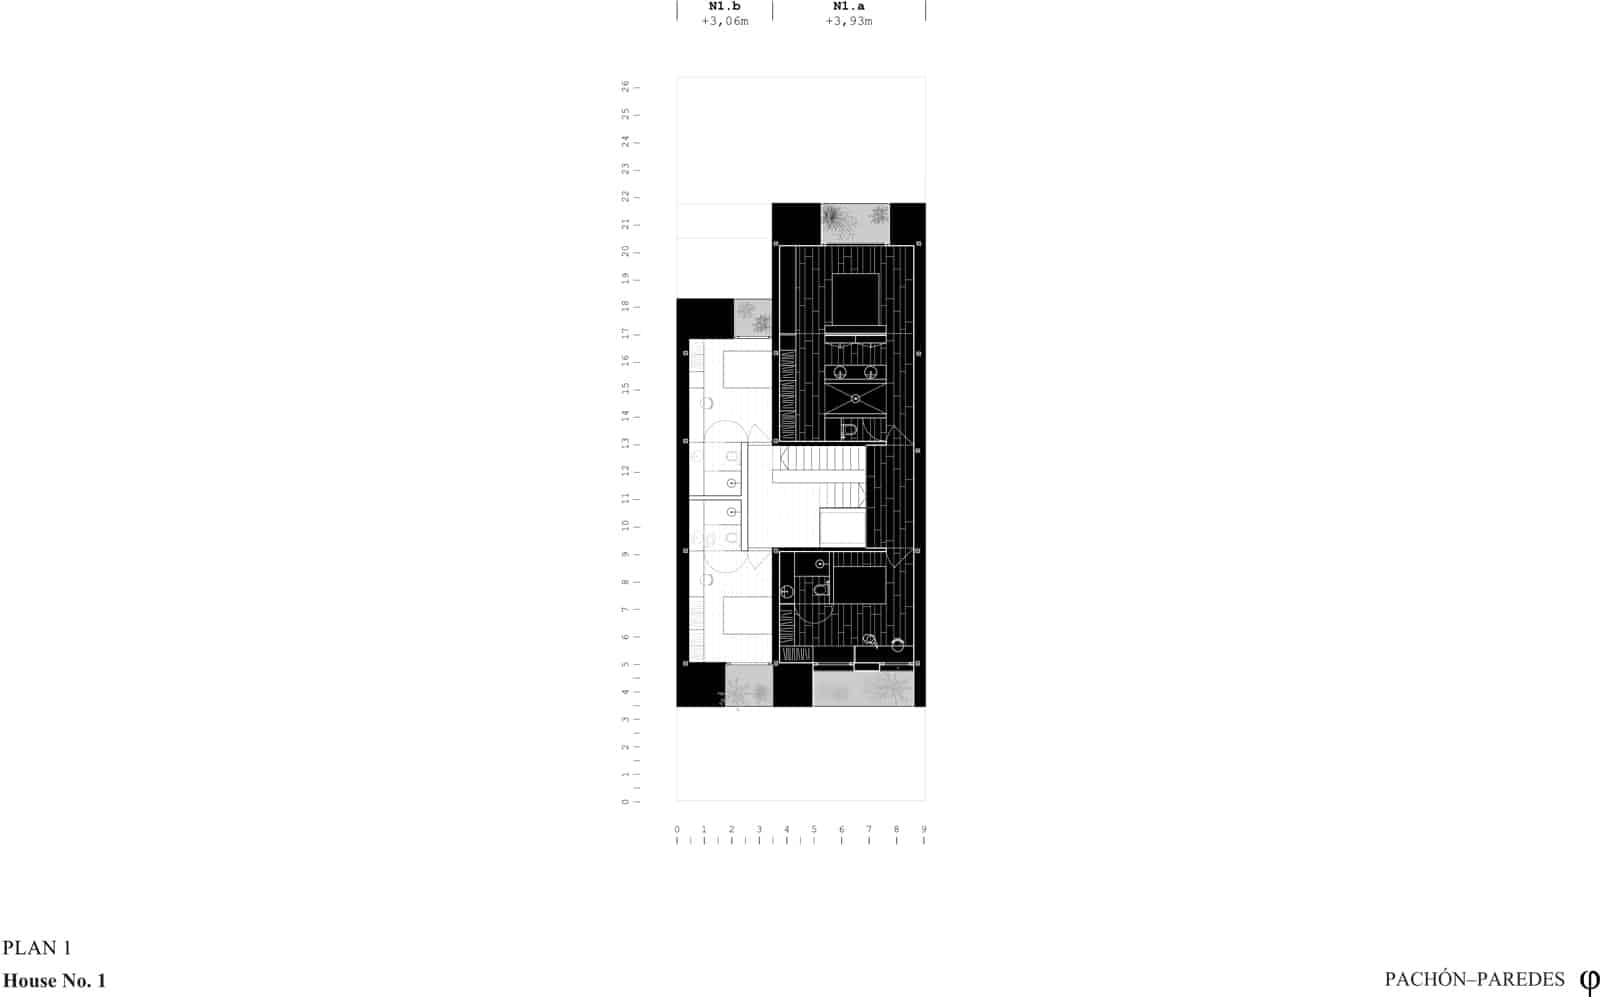 House No. 1  - 20220201 PachonParedes 86centimetros 13 63